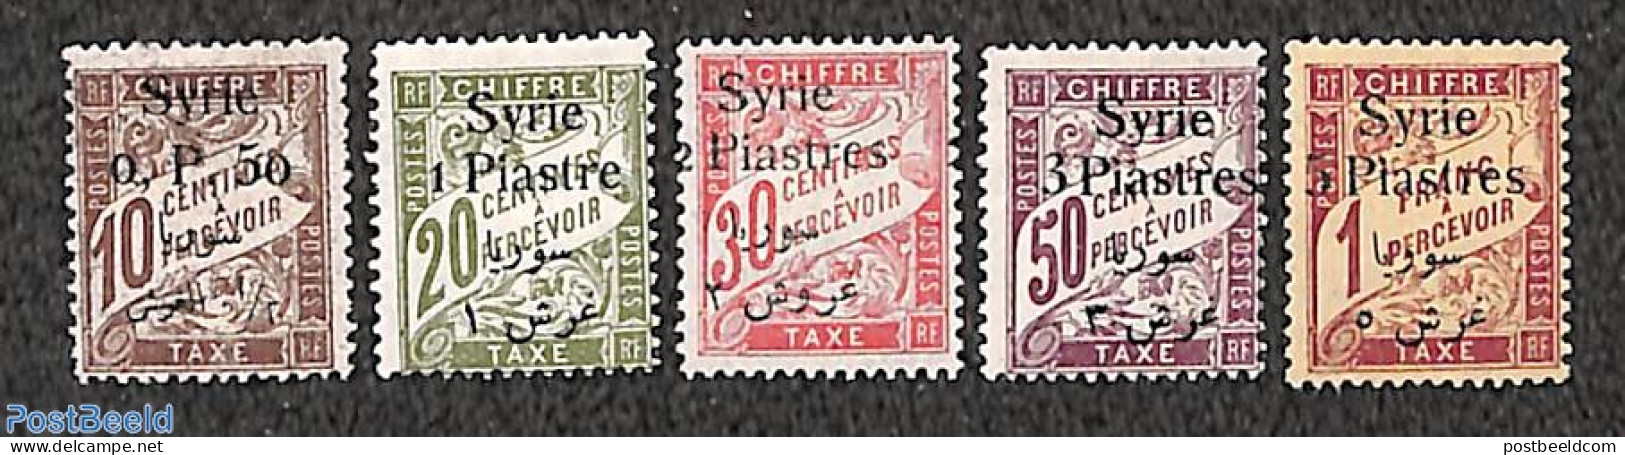 Syria 1924 Postage Due 5v, Unused (hinged) - Syria